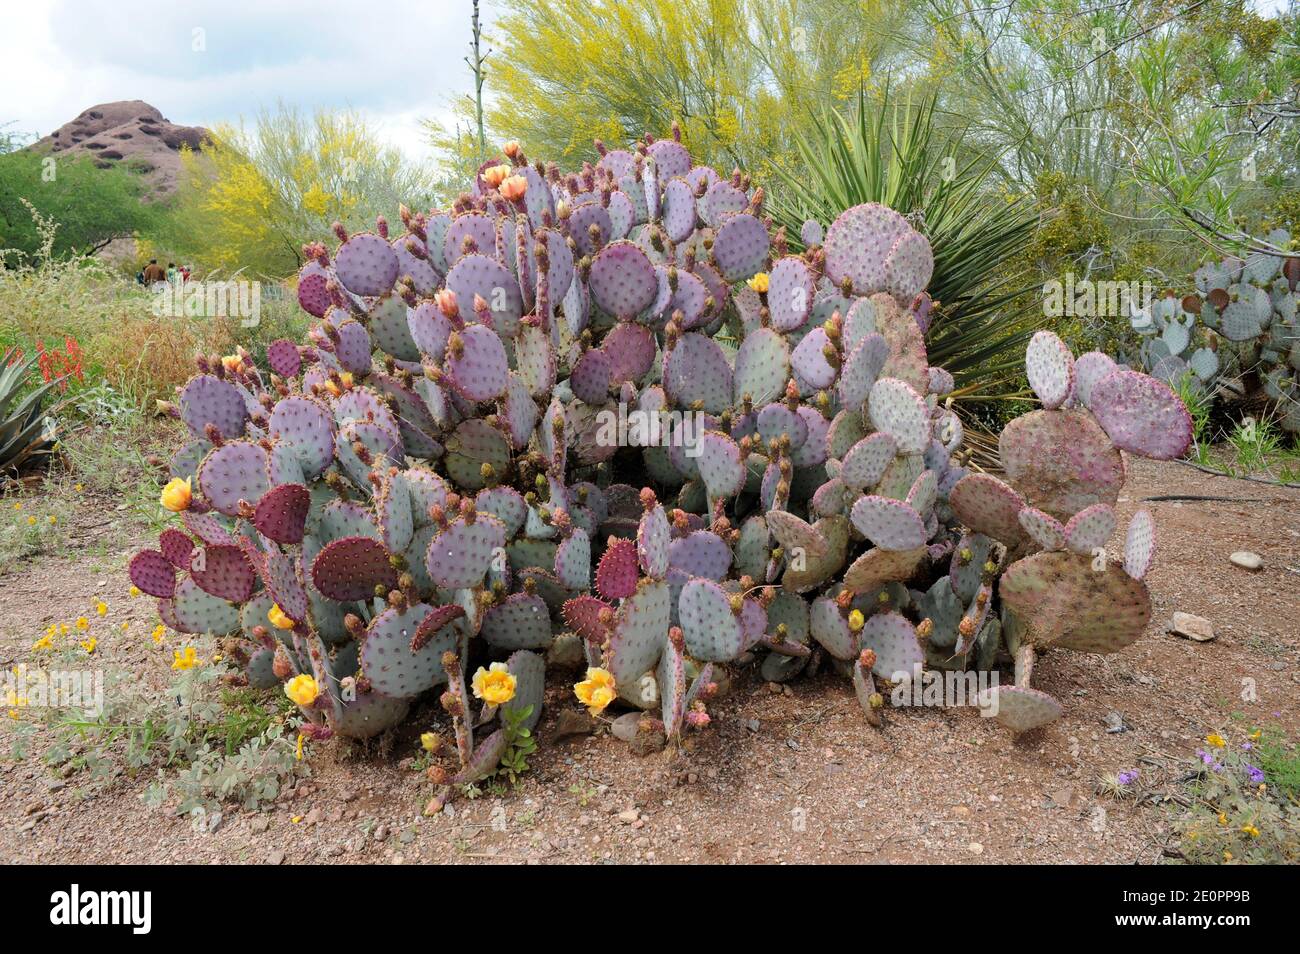 Violette Kaktus (Opuntia gosseliniana oder Opuntia violacea) ist ein Kaktus aus Arizona (USA), Baja California, Chihuahua und Sonora (Mexiko). Stockfoto